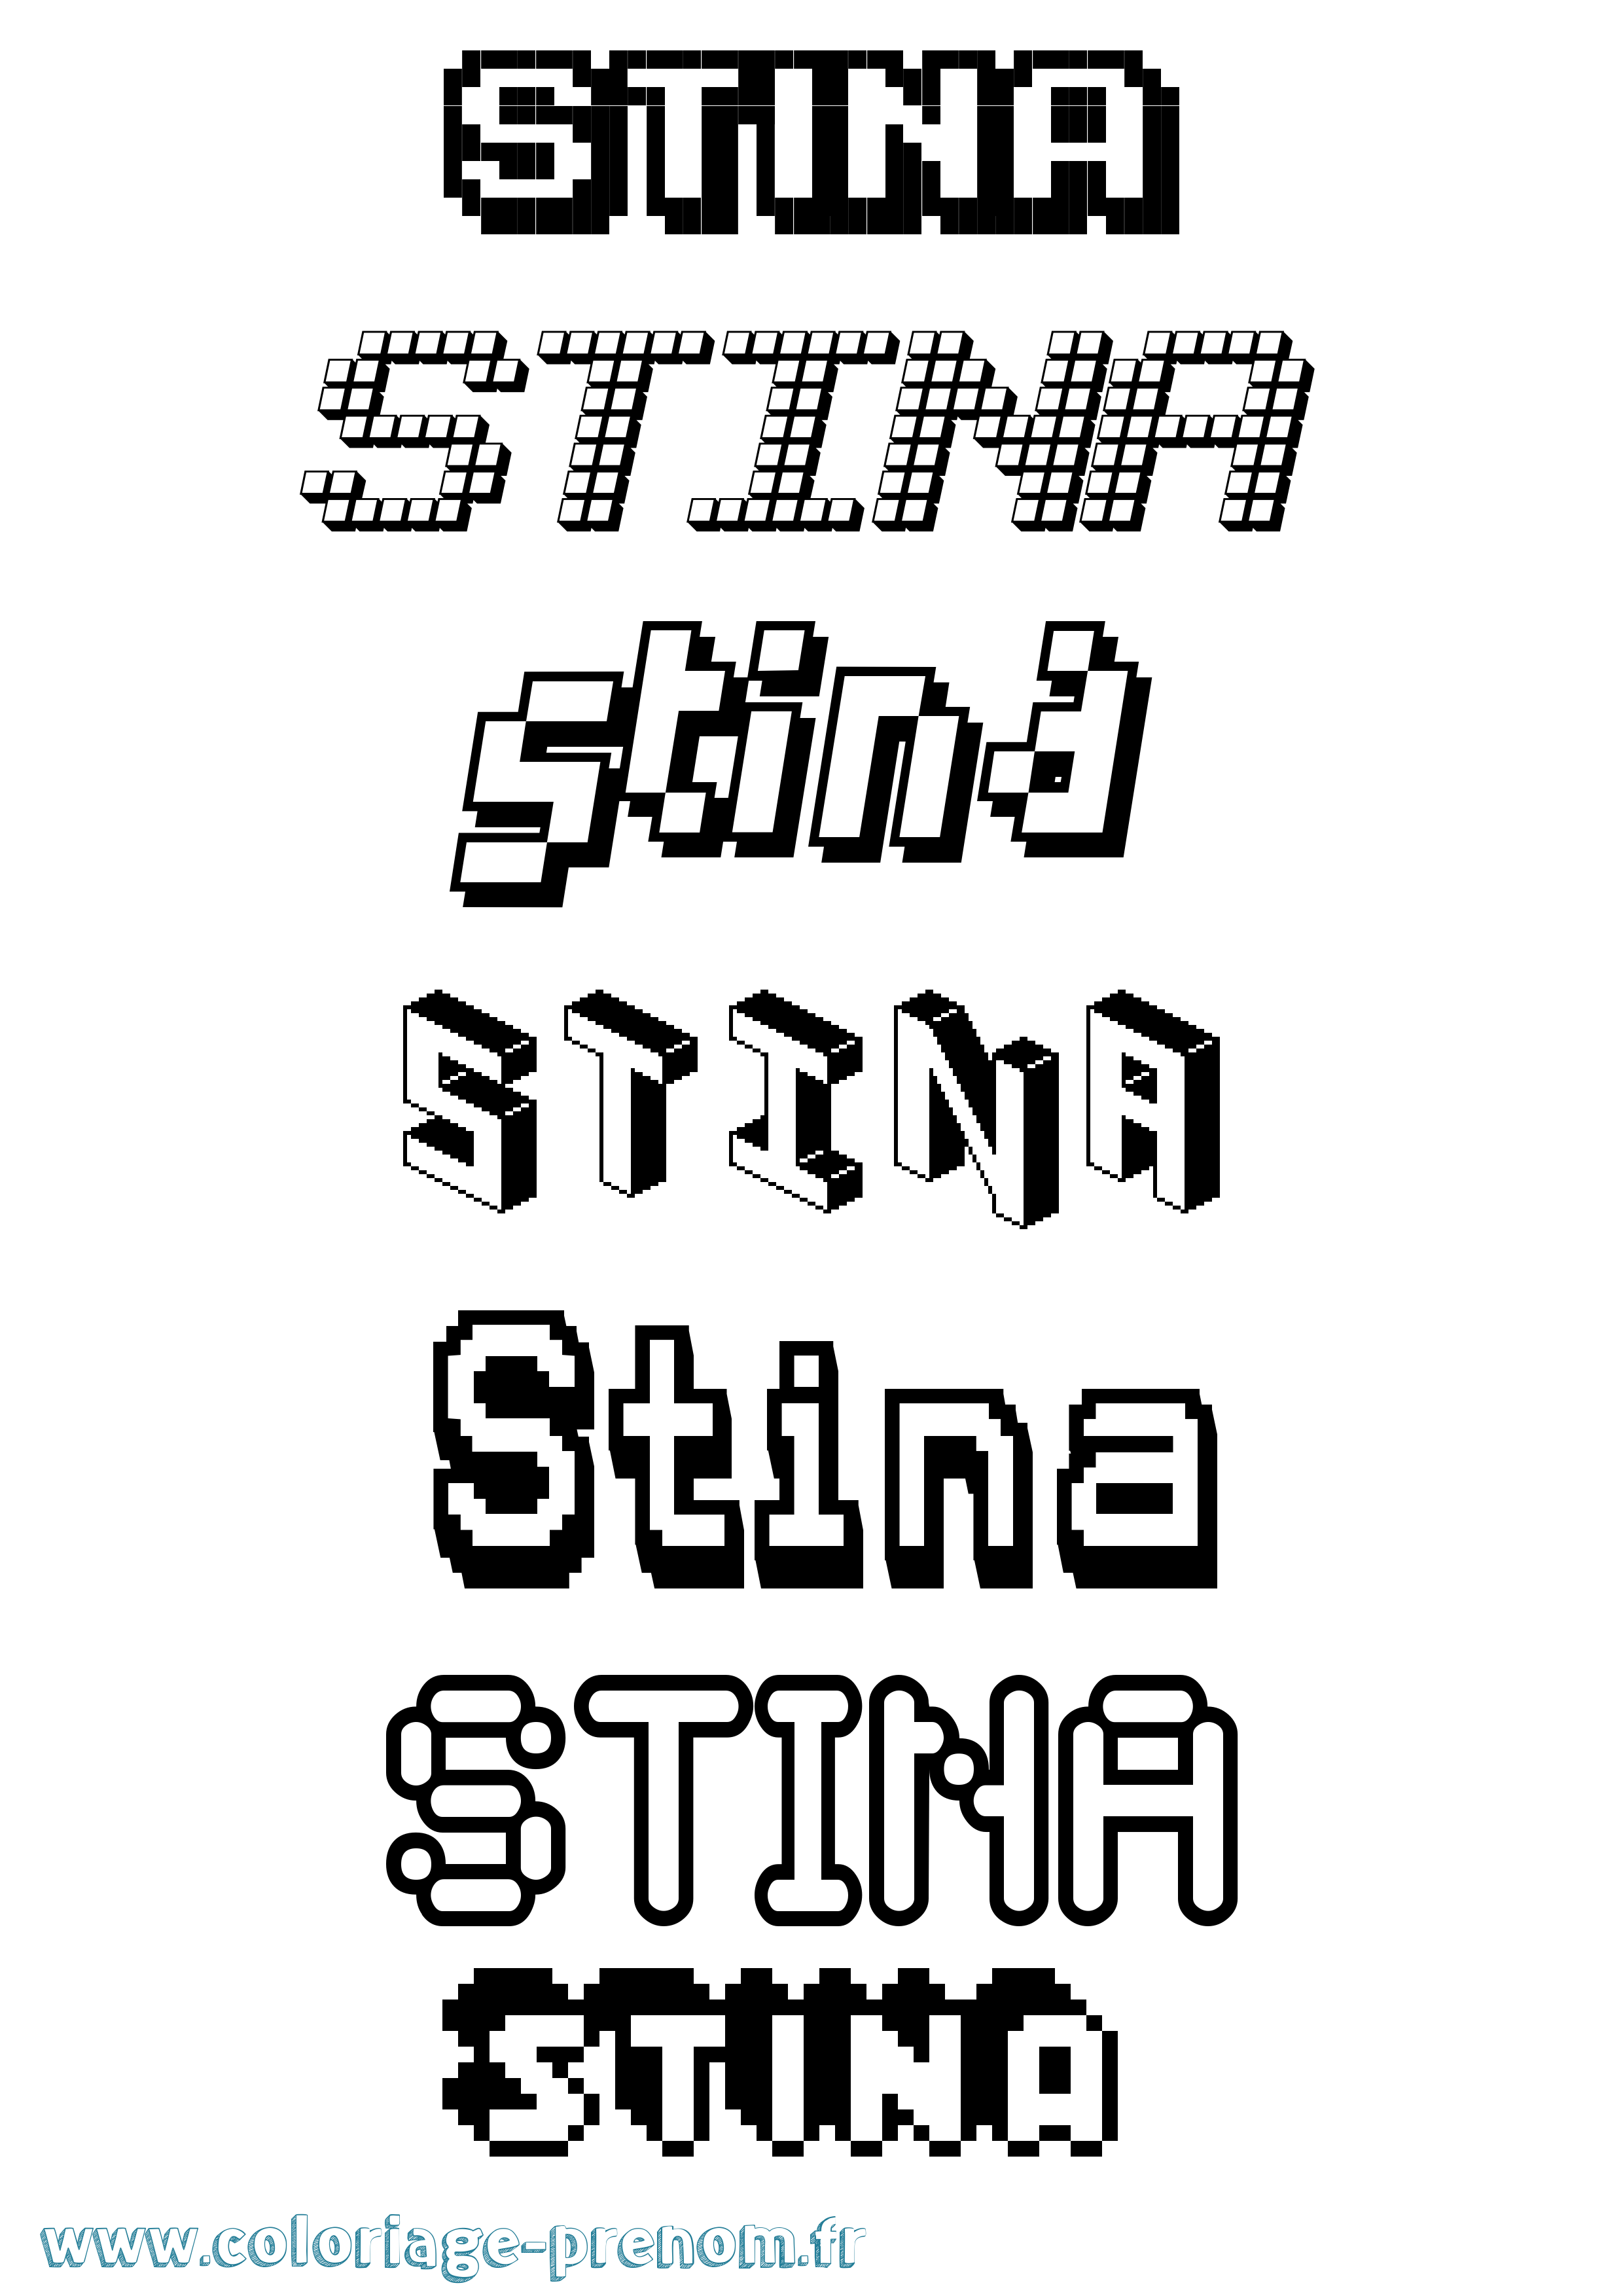 Coloriage prénom Stina Pixel